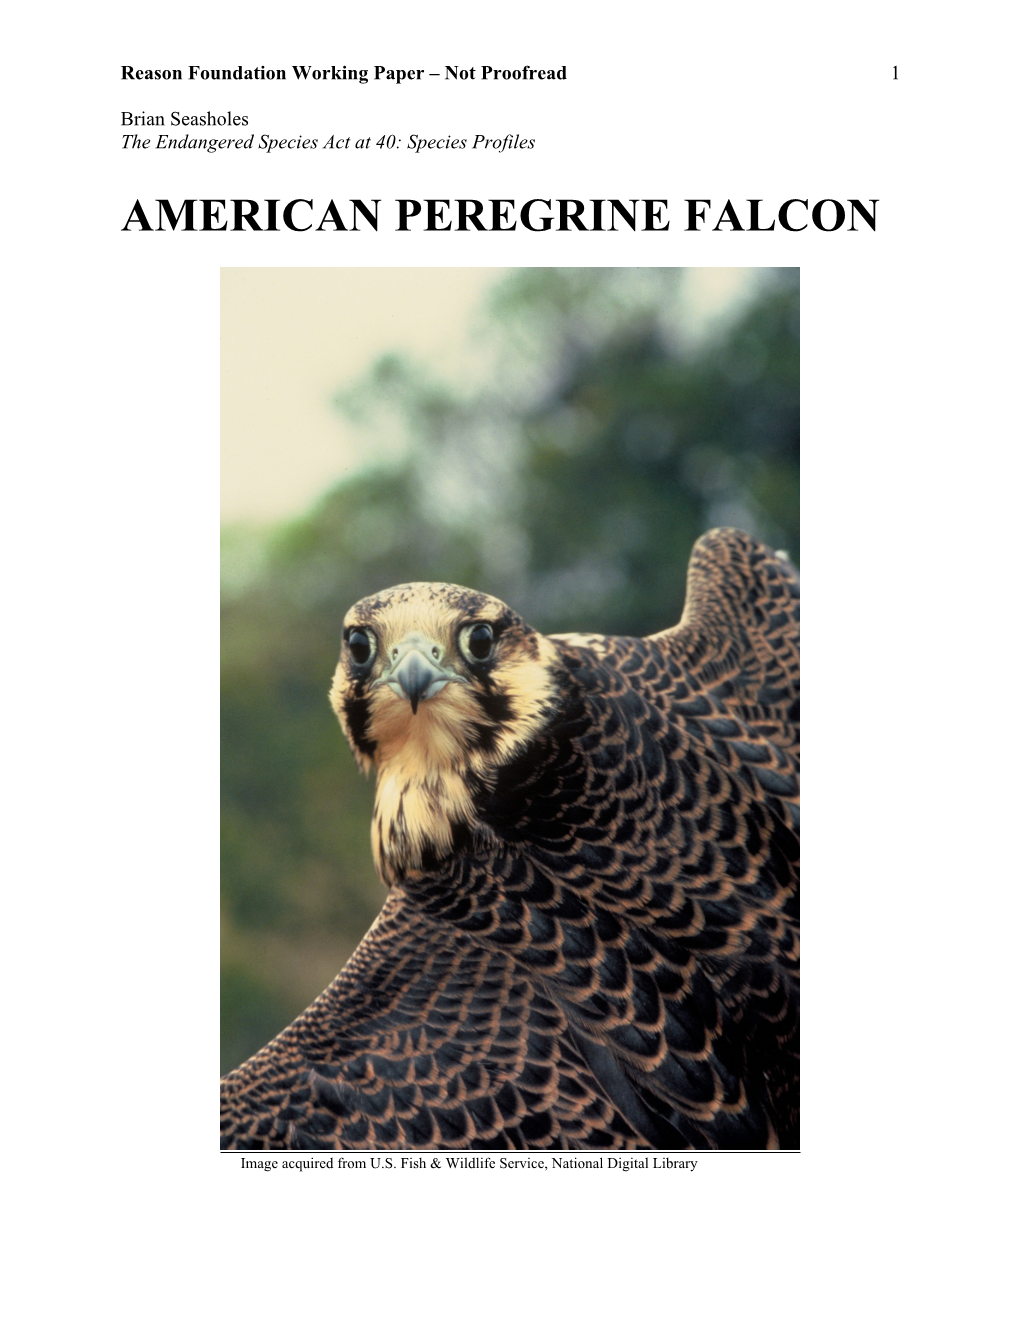 American Peregrine Falcon